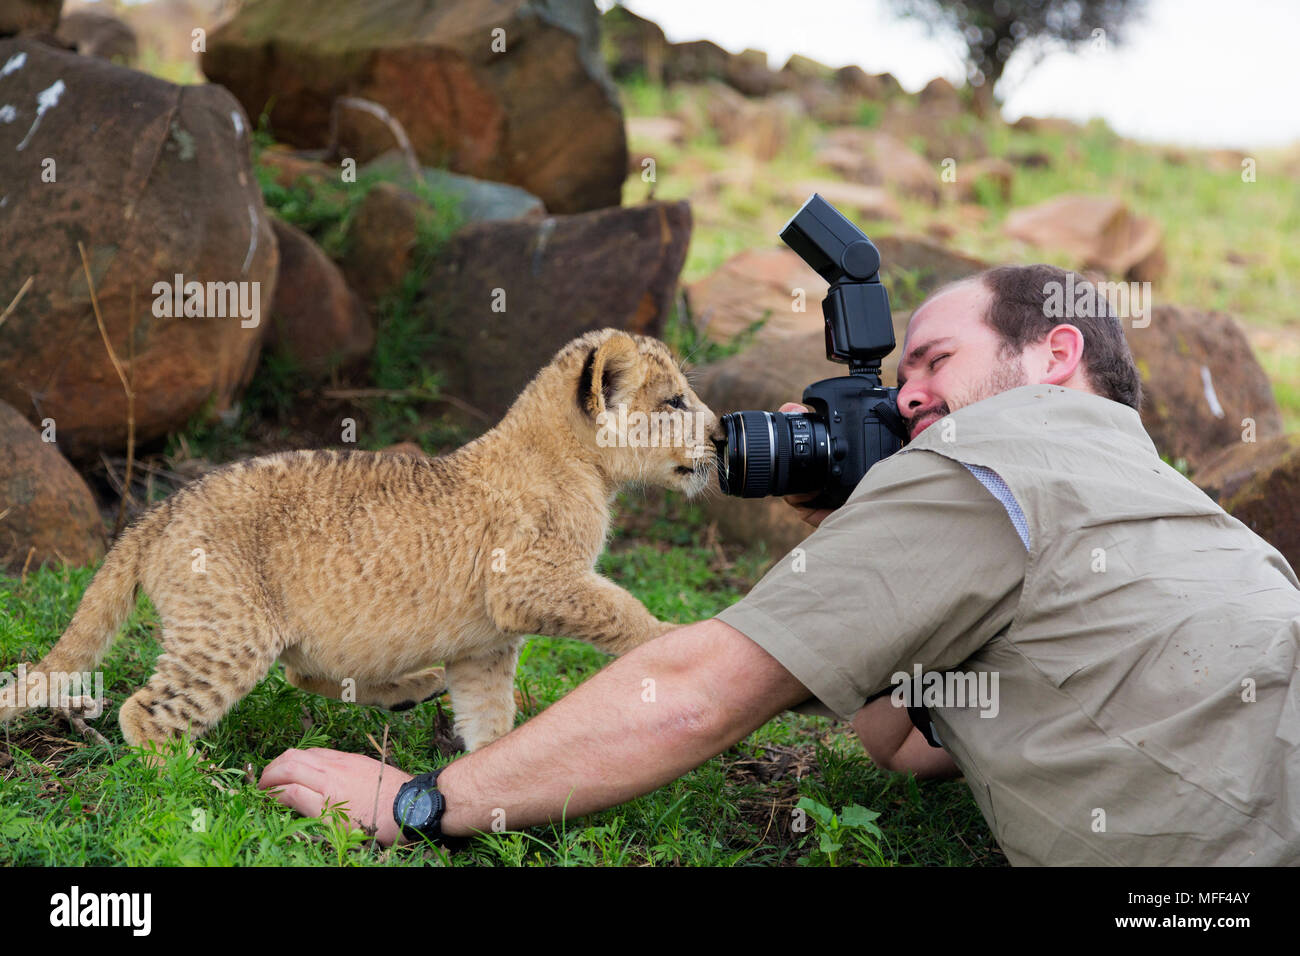 Man photographing des lionceaux, Afrique du Sud. Parution du modèle Banque D'Images